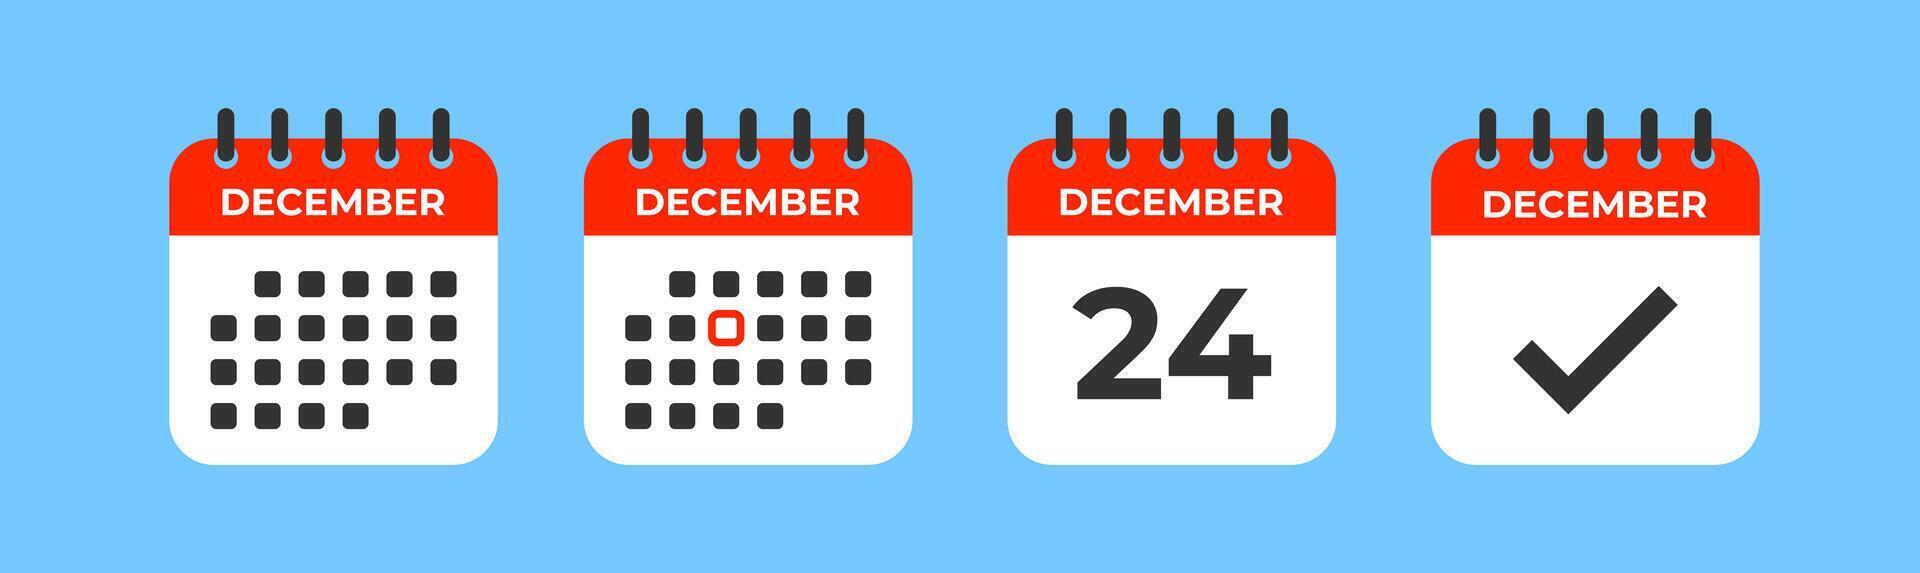 calendario icono. diciembre mes, 24 día. importante fecha. calendario hecho. cheque marca gráfico. evento día. fecha límite tiempo. vector ilustración.